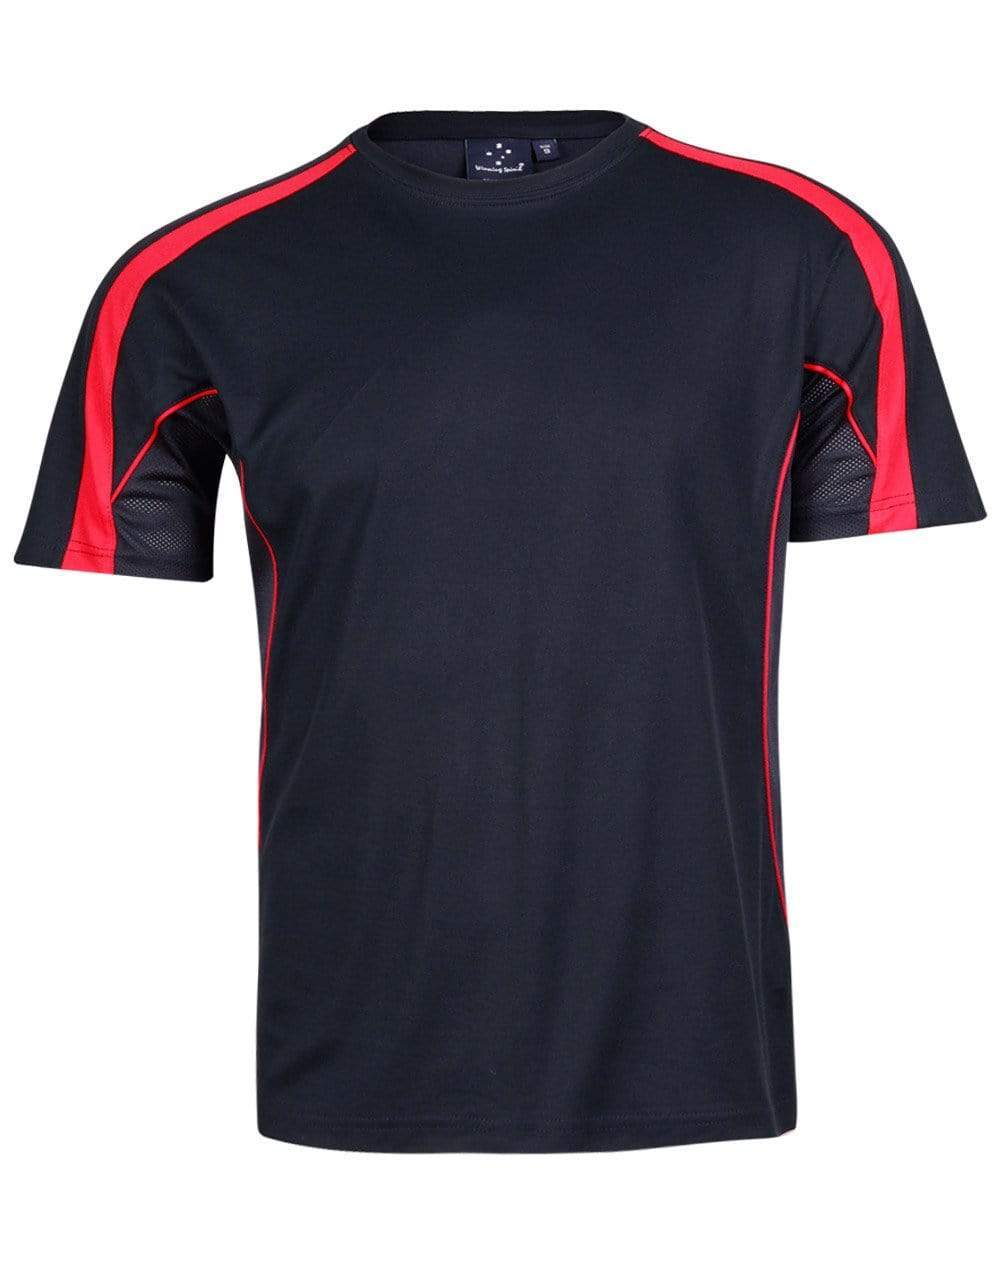 Winning Spirit Casual Wear Navy/Red / XS Legend Tee Shirt Men's Ts53